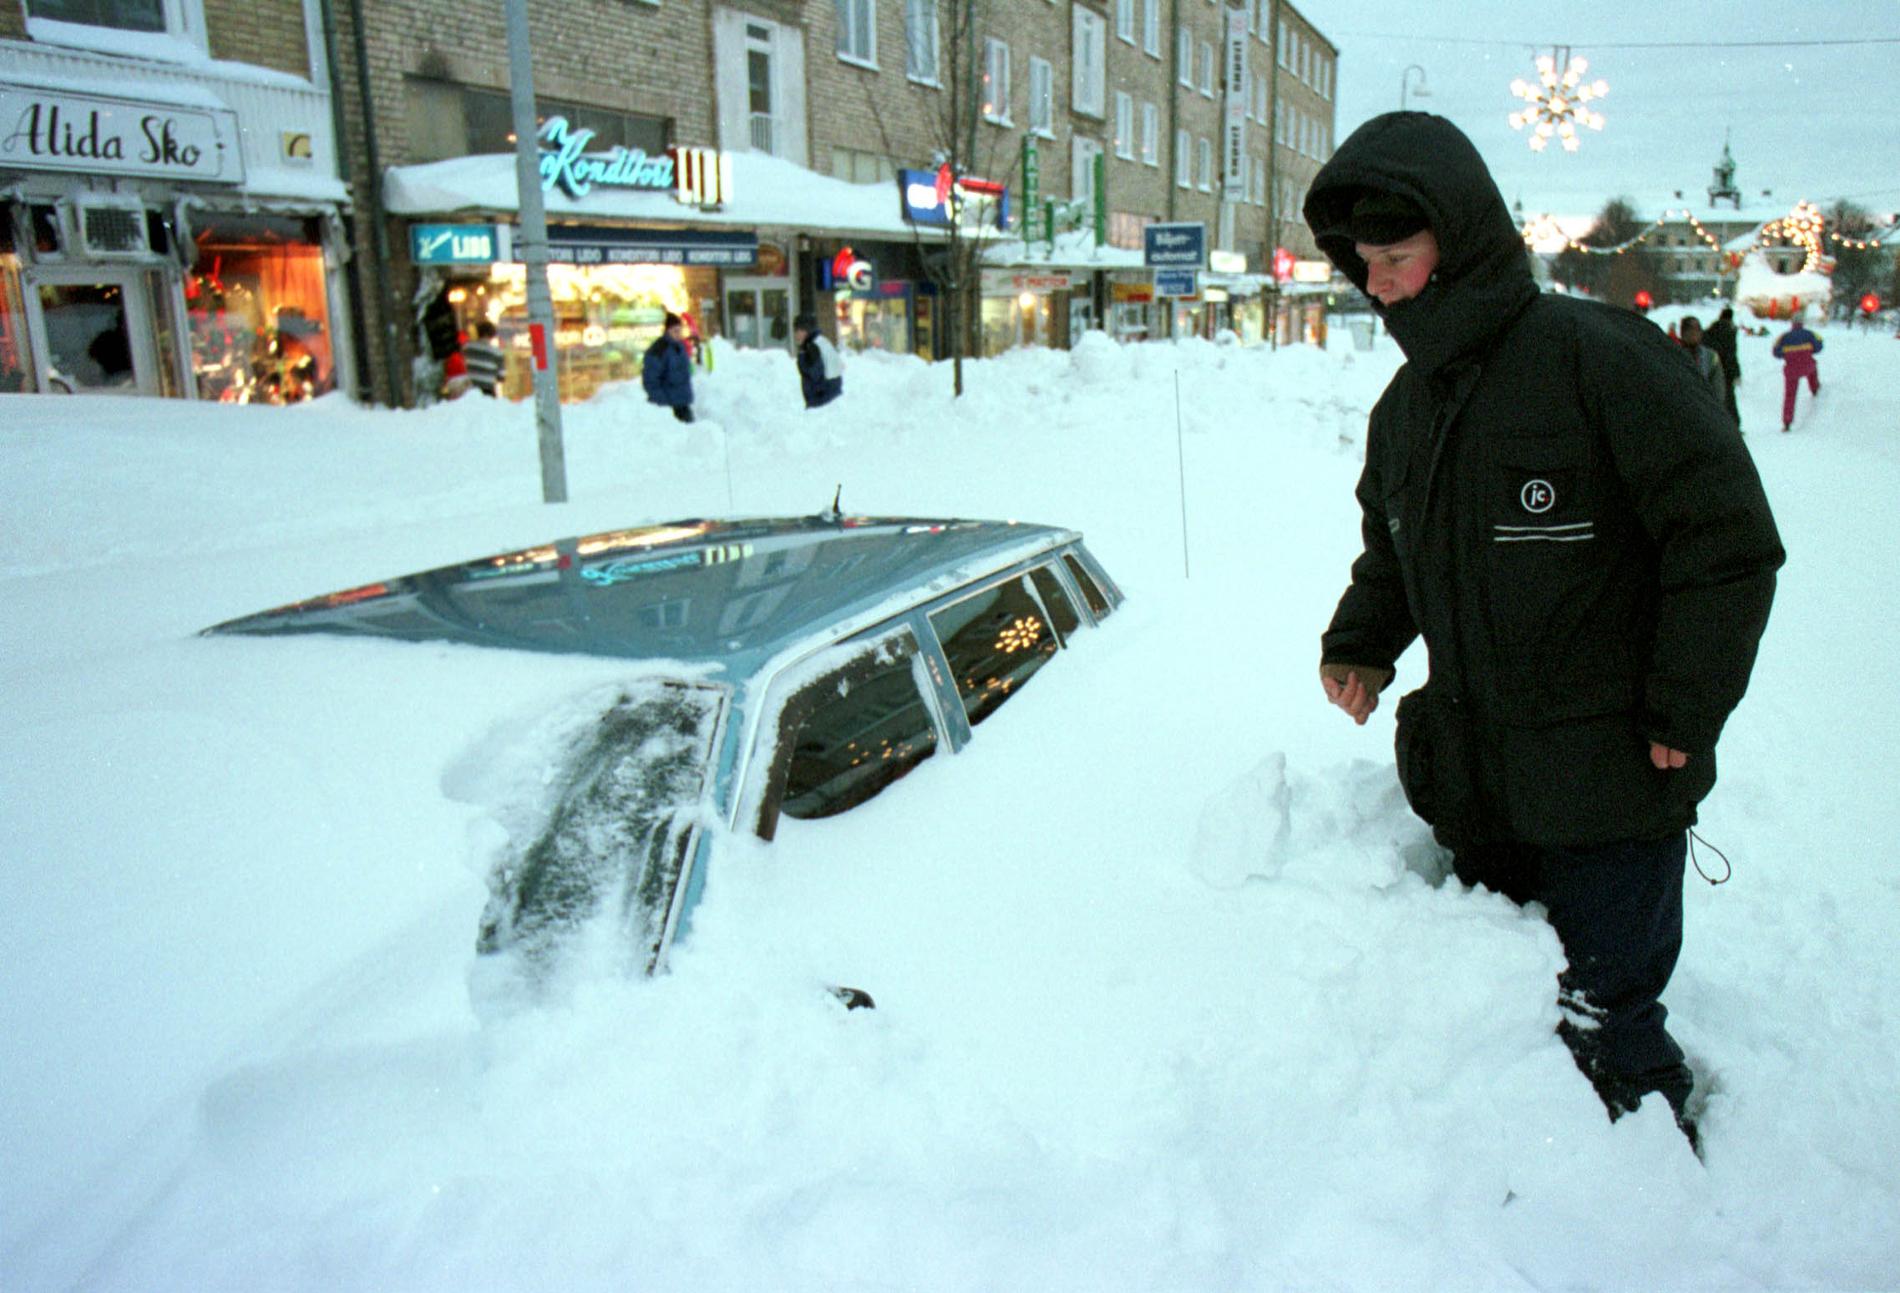 När det stilla dalandet av snöflingor förvandlades till en snökanon kom runt 130 cm snö i Gävle på bara ett par dagar. Staden blev belägrad, först drygt en vecka senare tog kaoset slut.